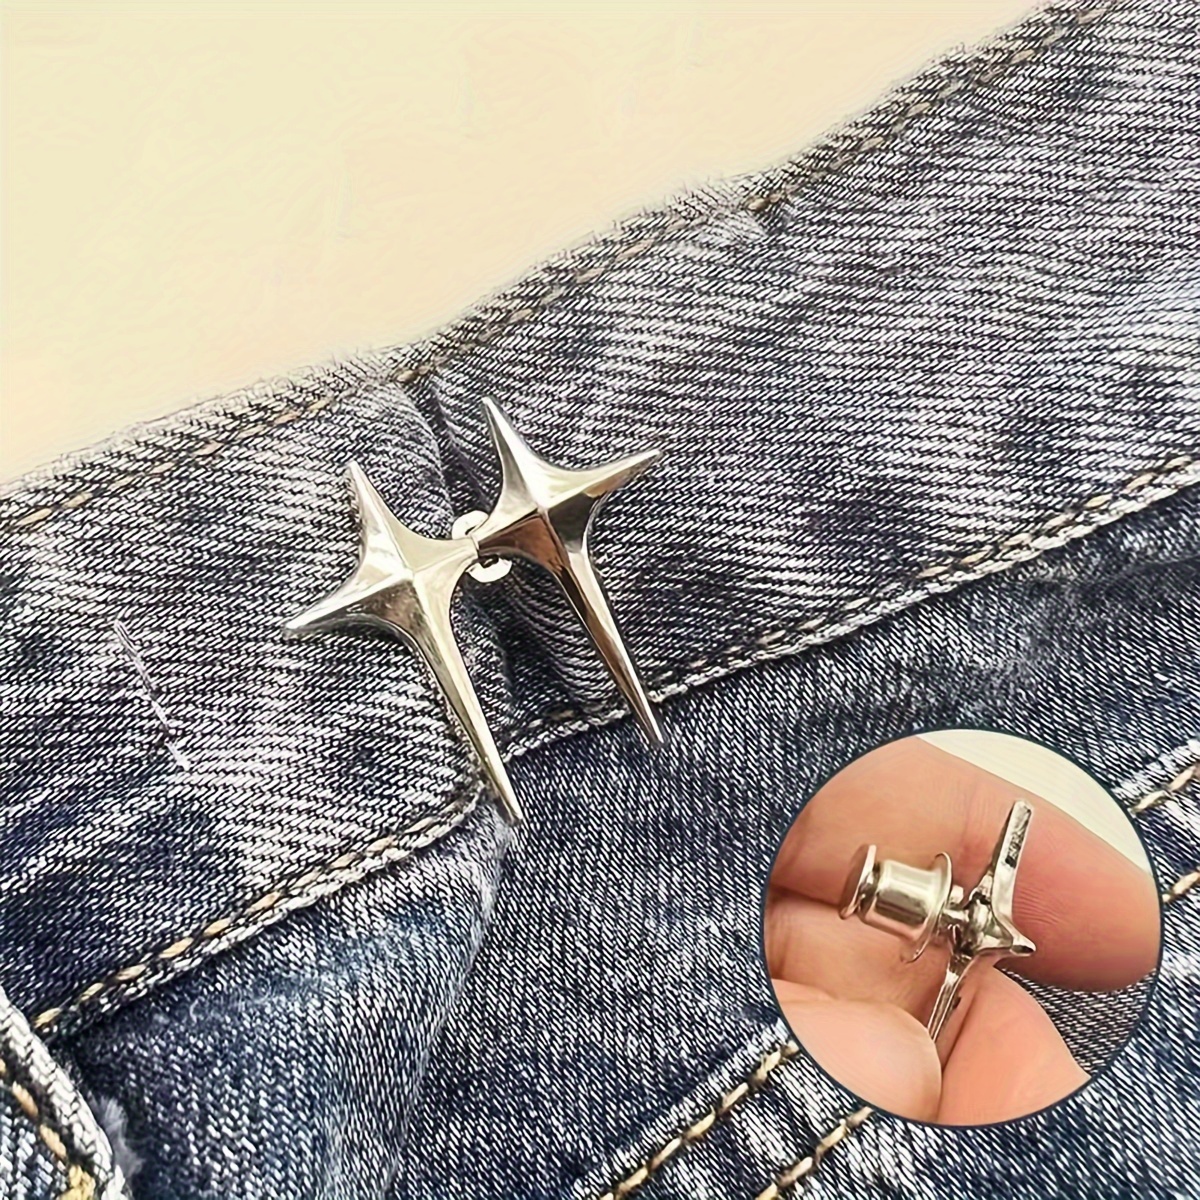 Set de 4 botones para Jeans de metal ajustables desmontables de fácil uso, Moda de Mujer